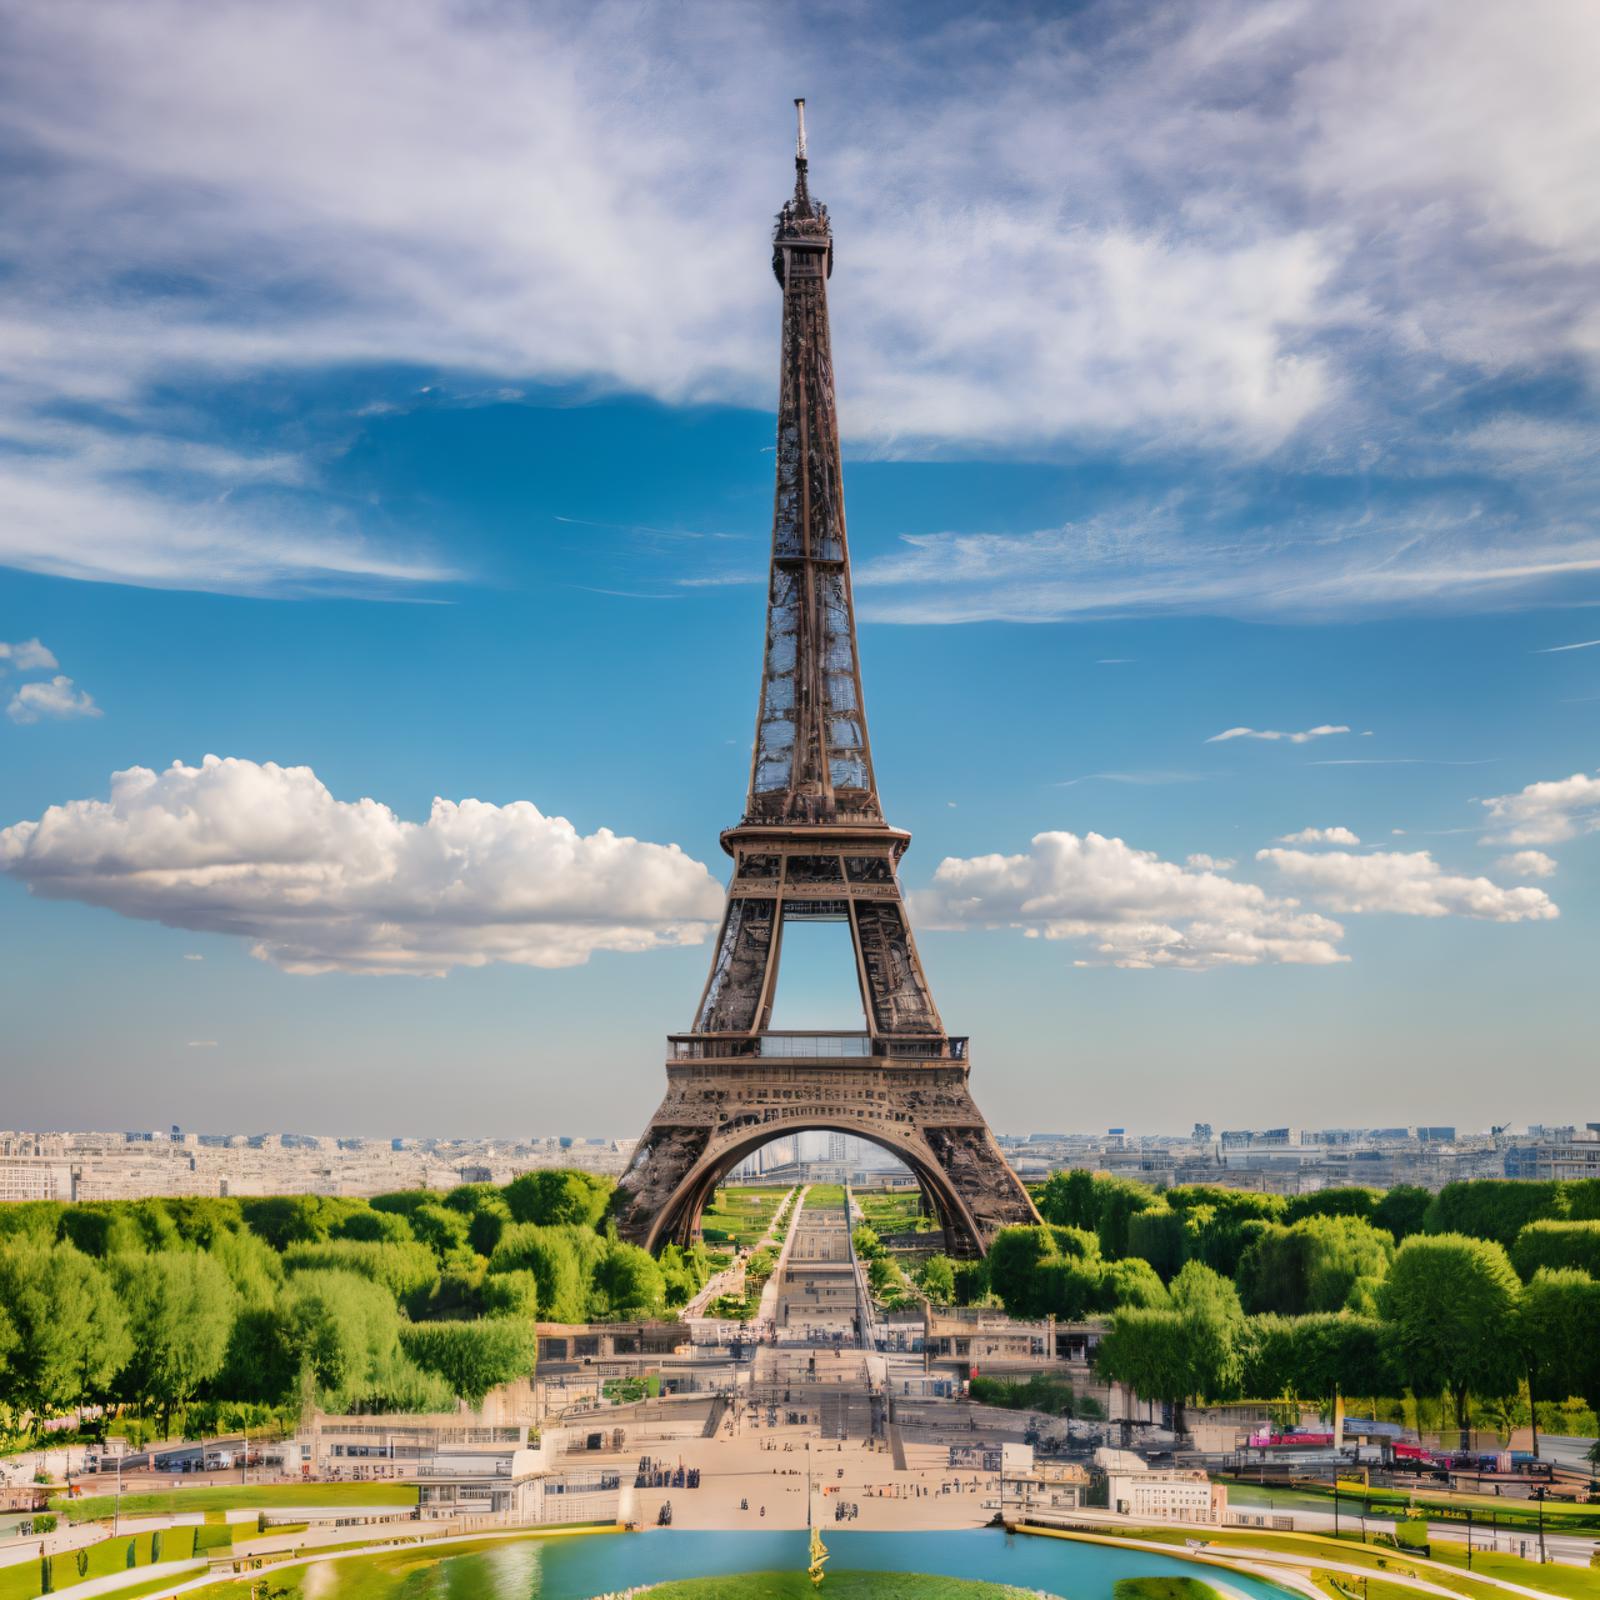 Eiffel Tower image by Boomfar